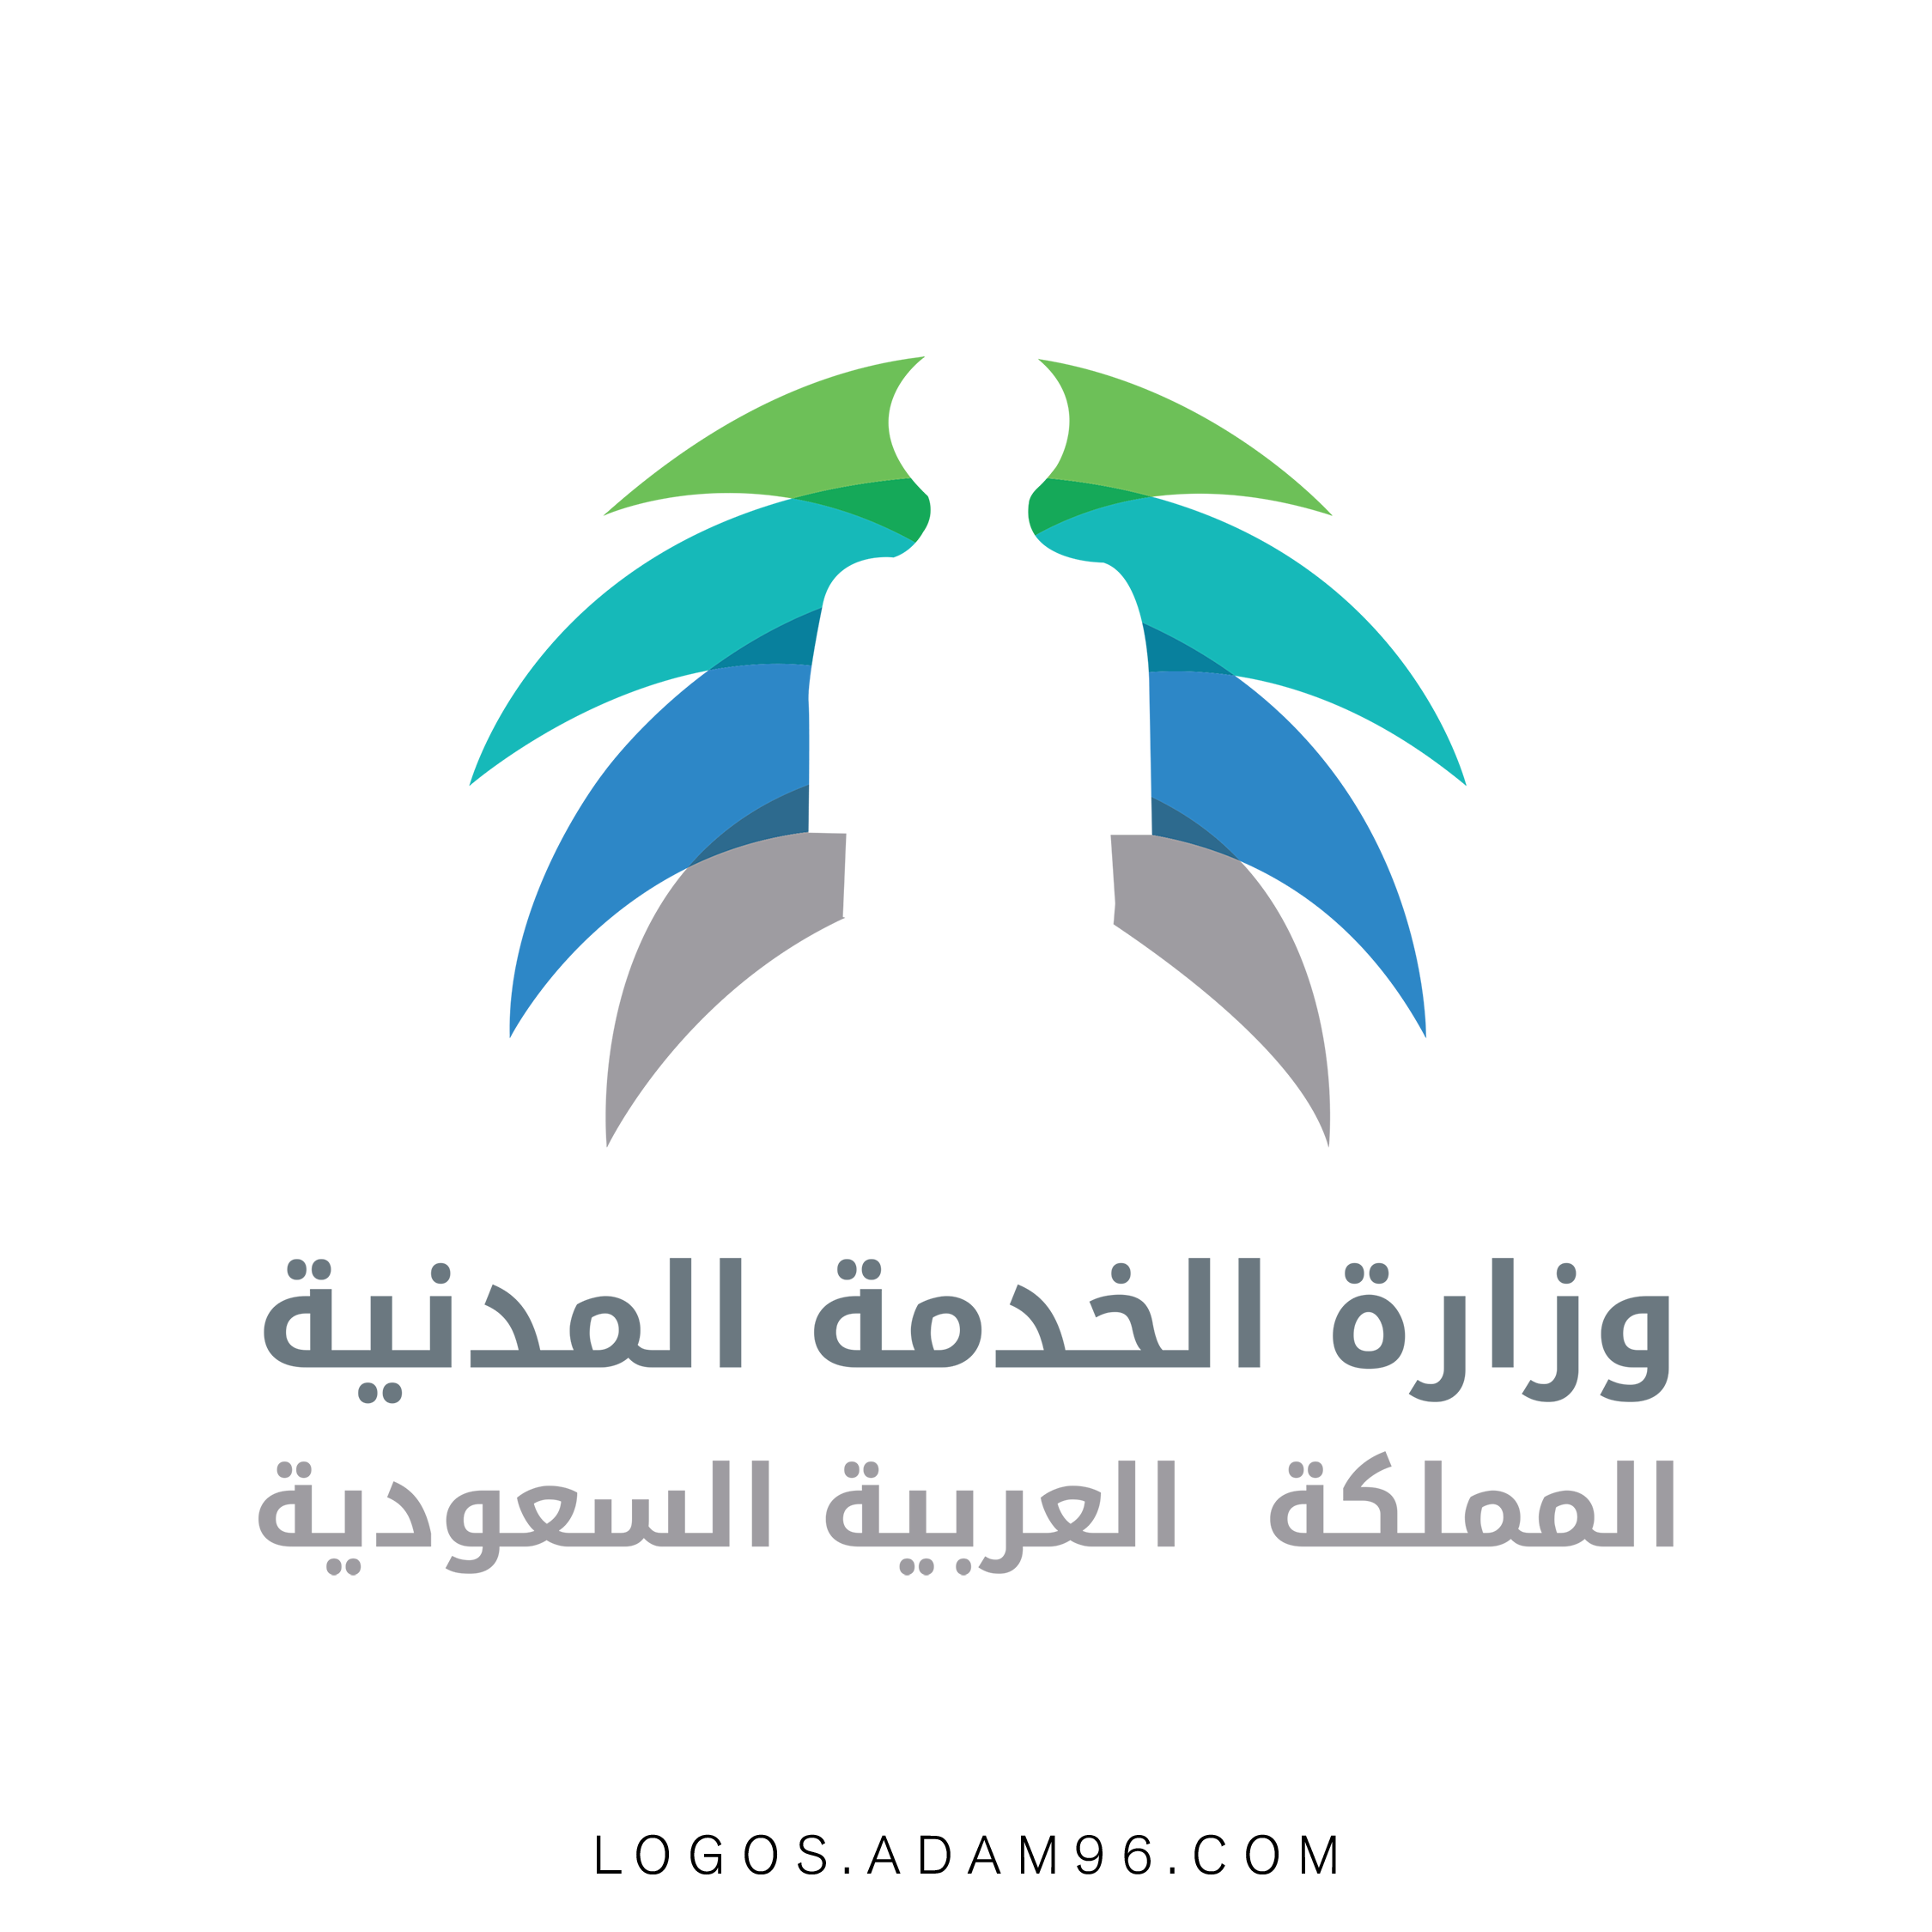 تحميل شعار وزارة الخدمة المدنية